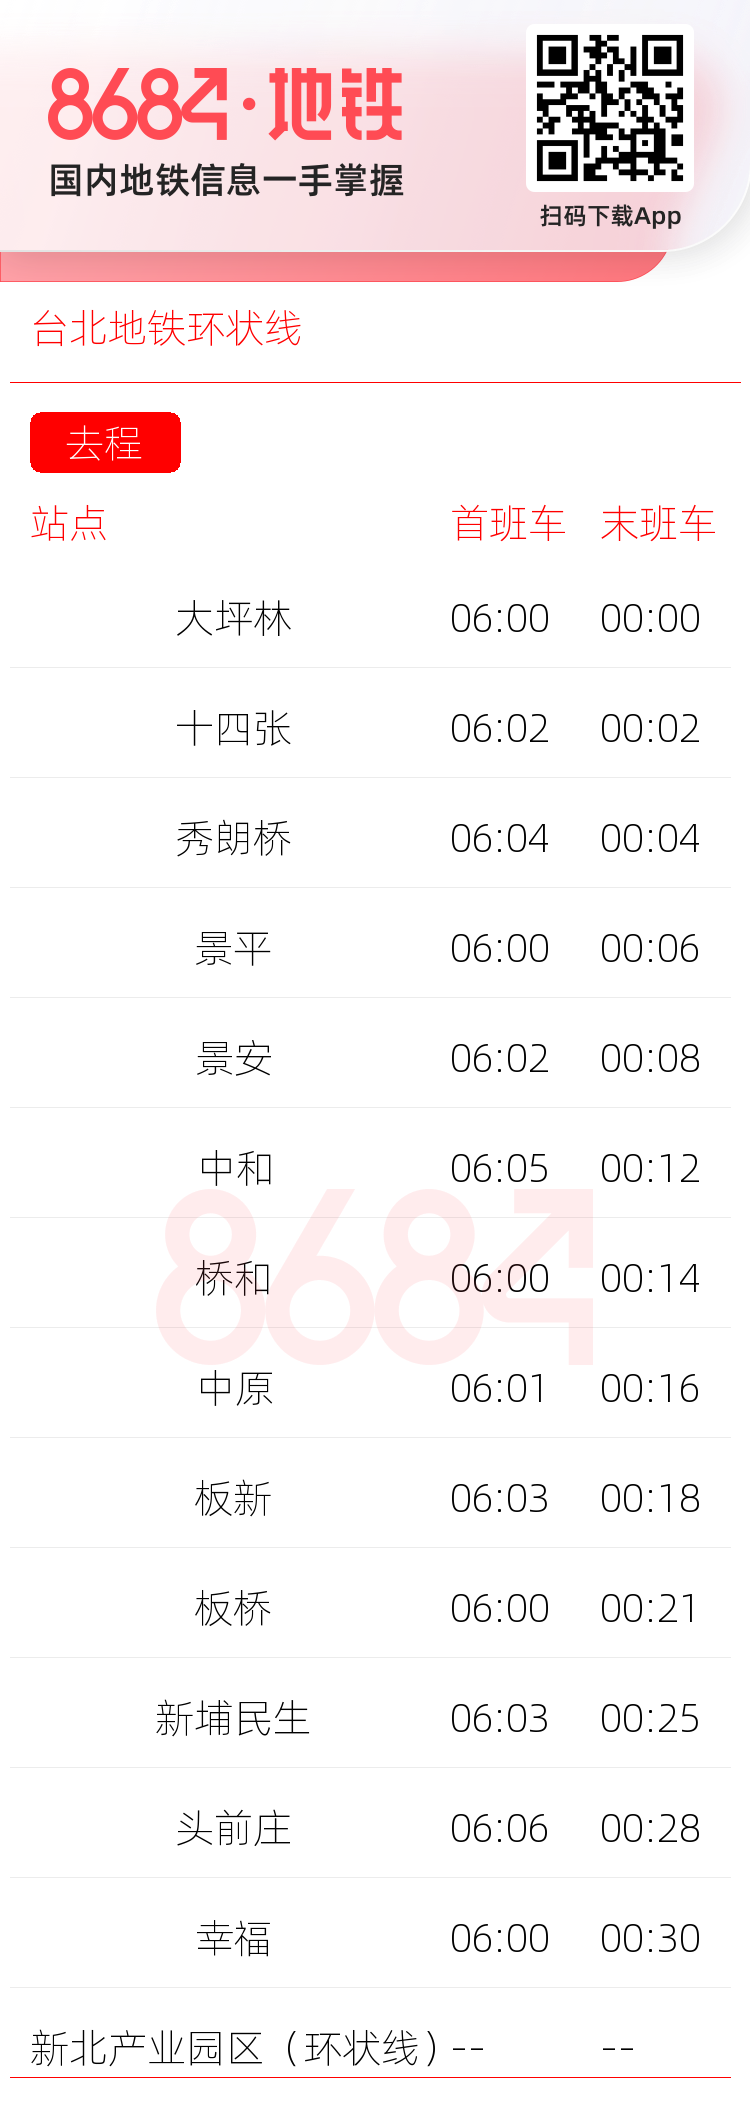 台北地铁环状线运营时间表